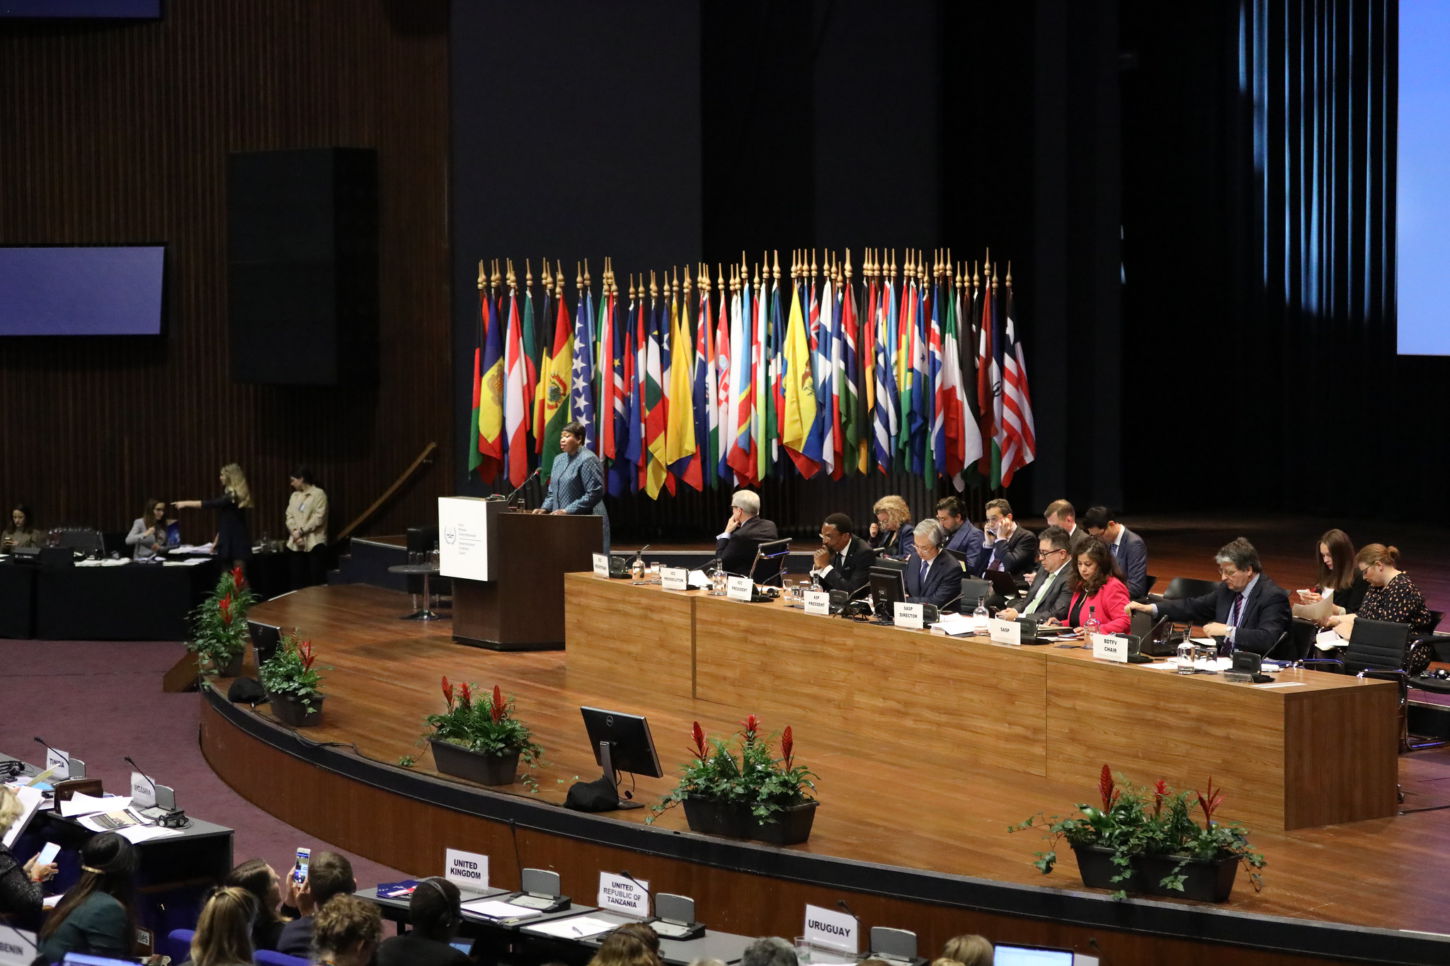 18ª sesión de la Asamblea de Estados Miembros de la Corte Penal Internacional (CPI) en La Haya en diciembre de 2019. (Imagen CPI vía Flickr).